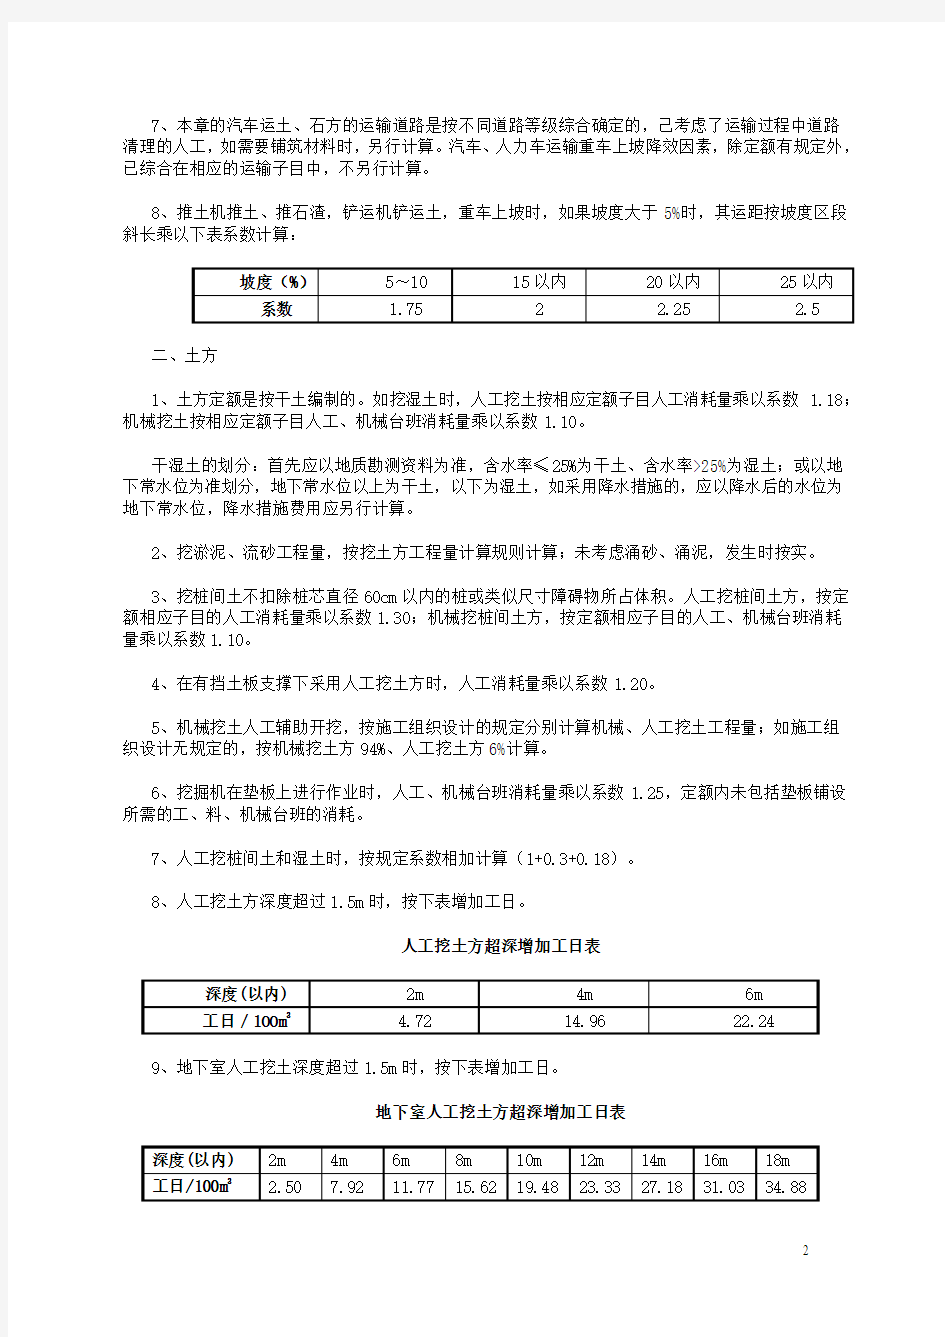 广东省2010建筑安装综合定额说明及计算规则